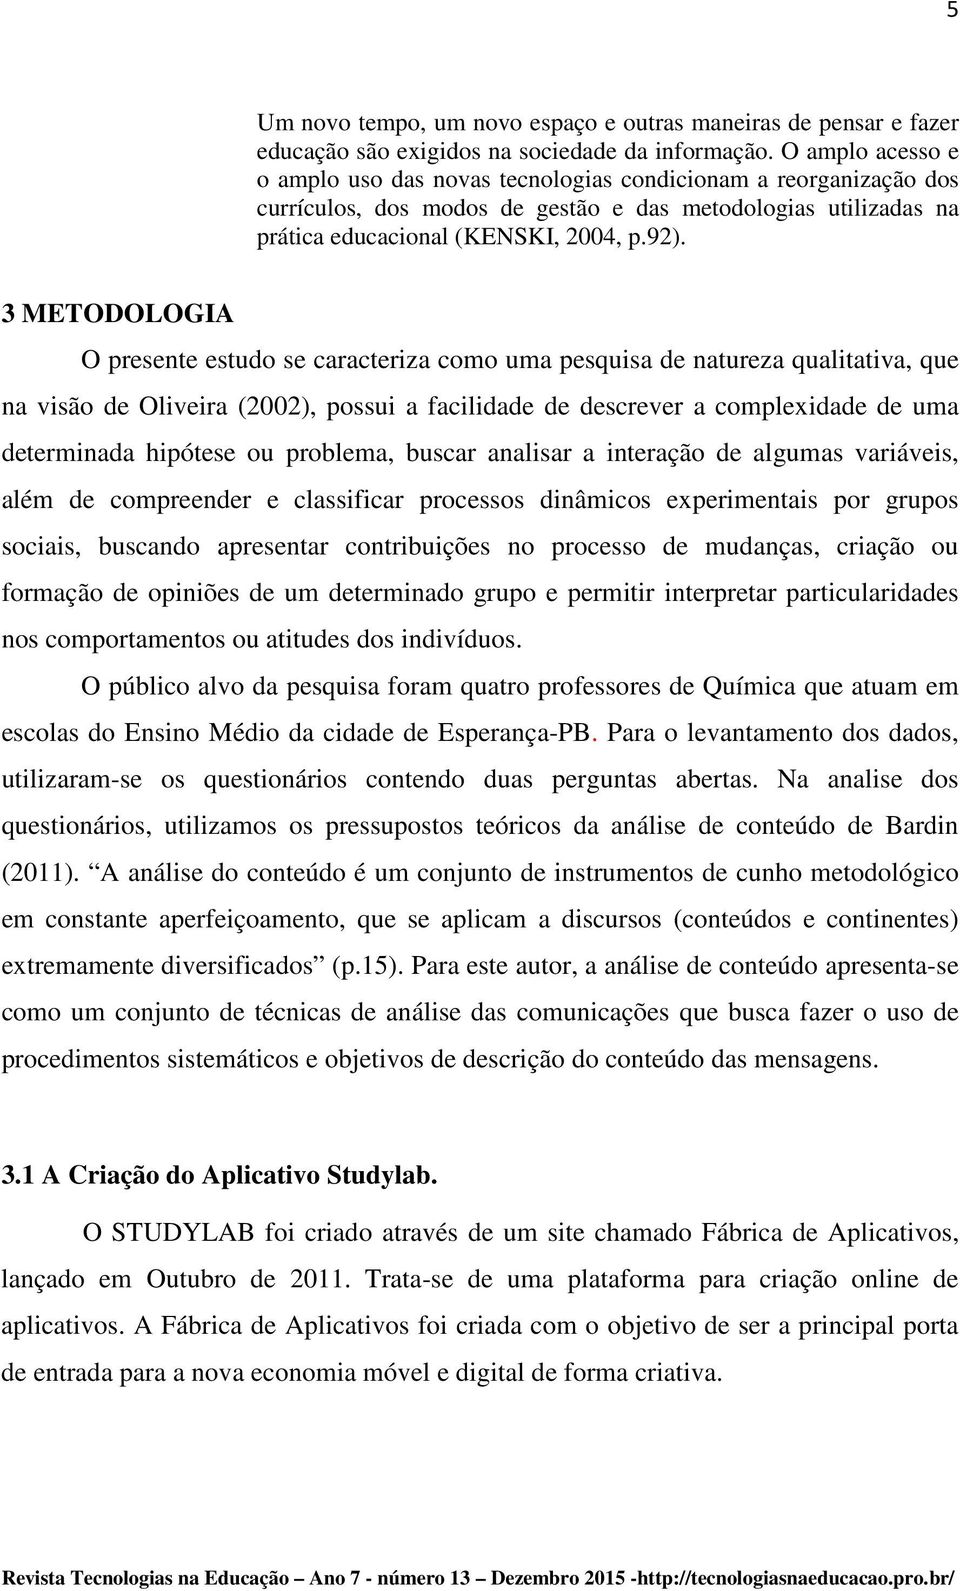 3 METODOLOGIA O presente estudo se caracteriza como uma pesquisa de natureza qualitativa, que na visão de Oliveira (2002), possui a facilidade de descrever a complexidade de uma determinada hipótese